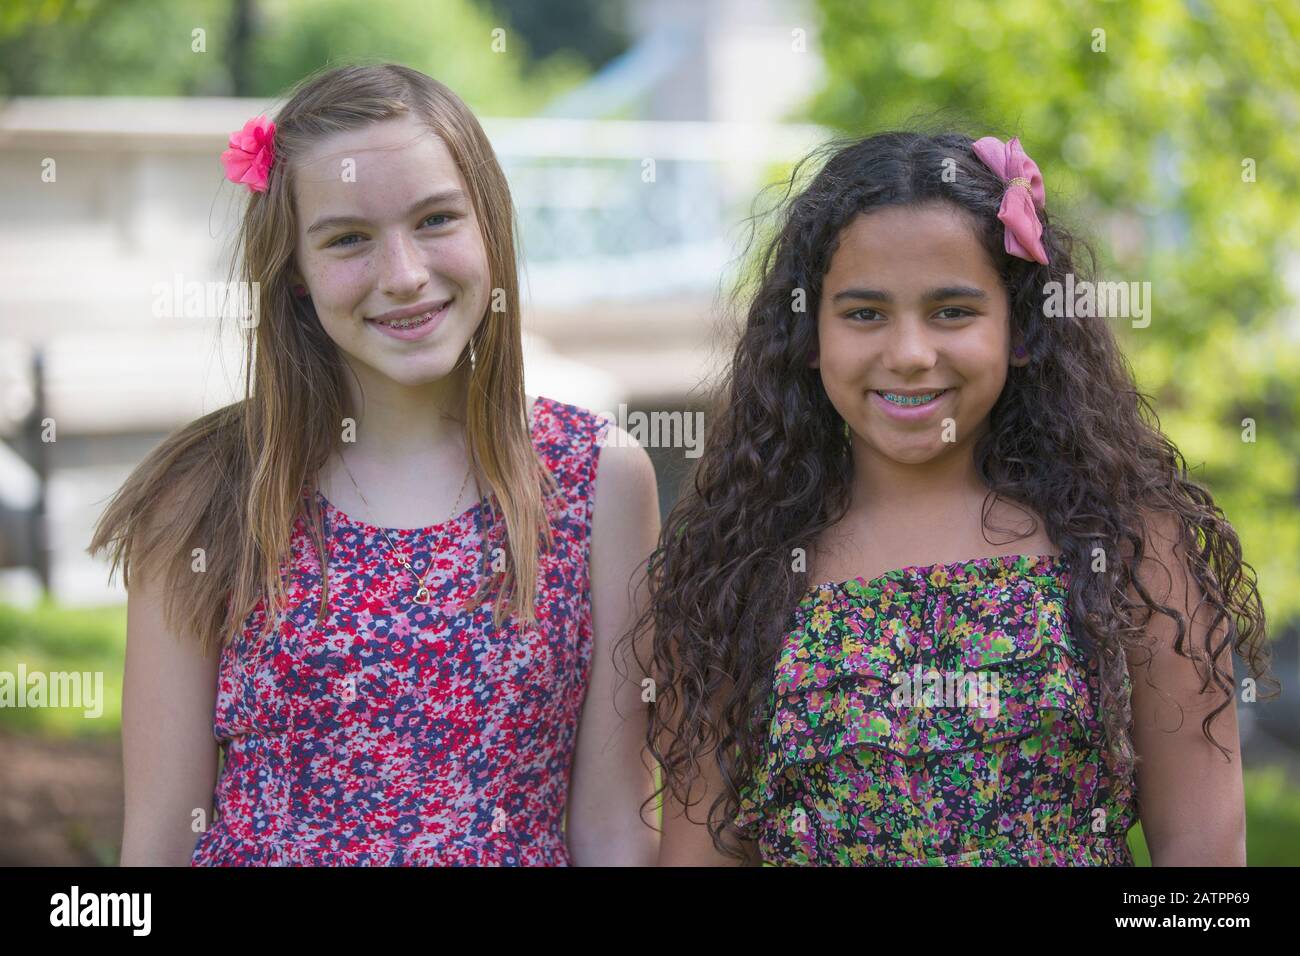 Ritratto di due ragazze che indossano abiti colorati e accessori per capelli Foto Stock